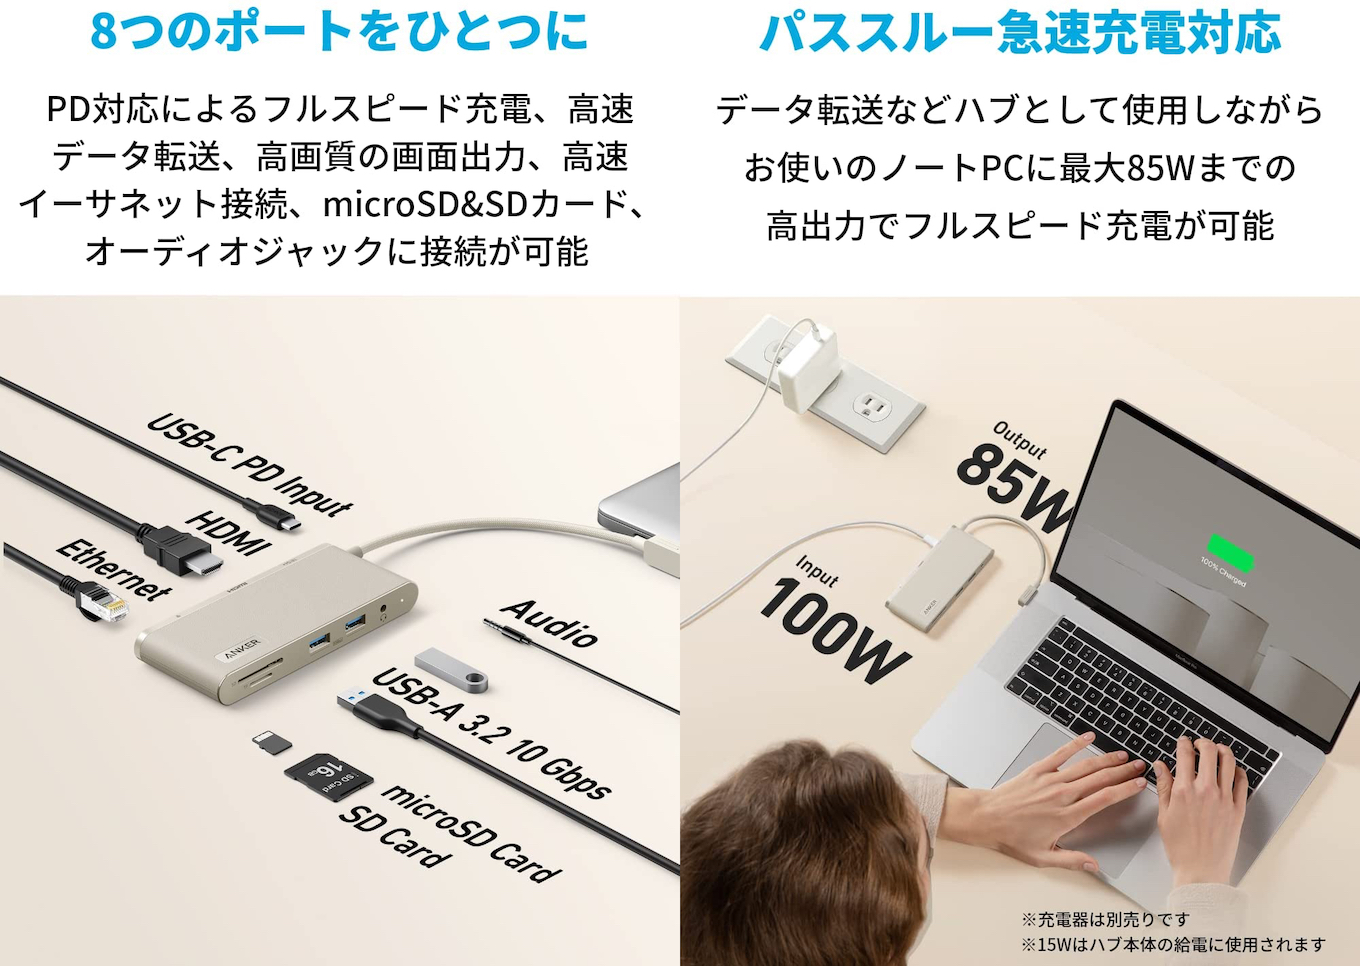 Anker 655 USB-C ハブの仕様